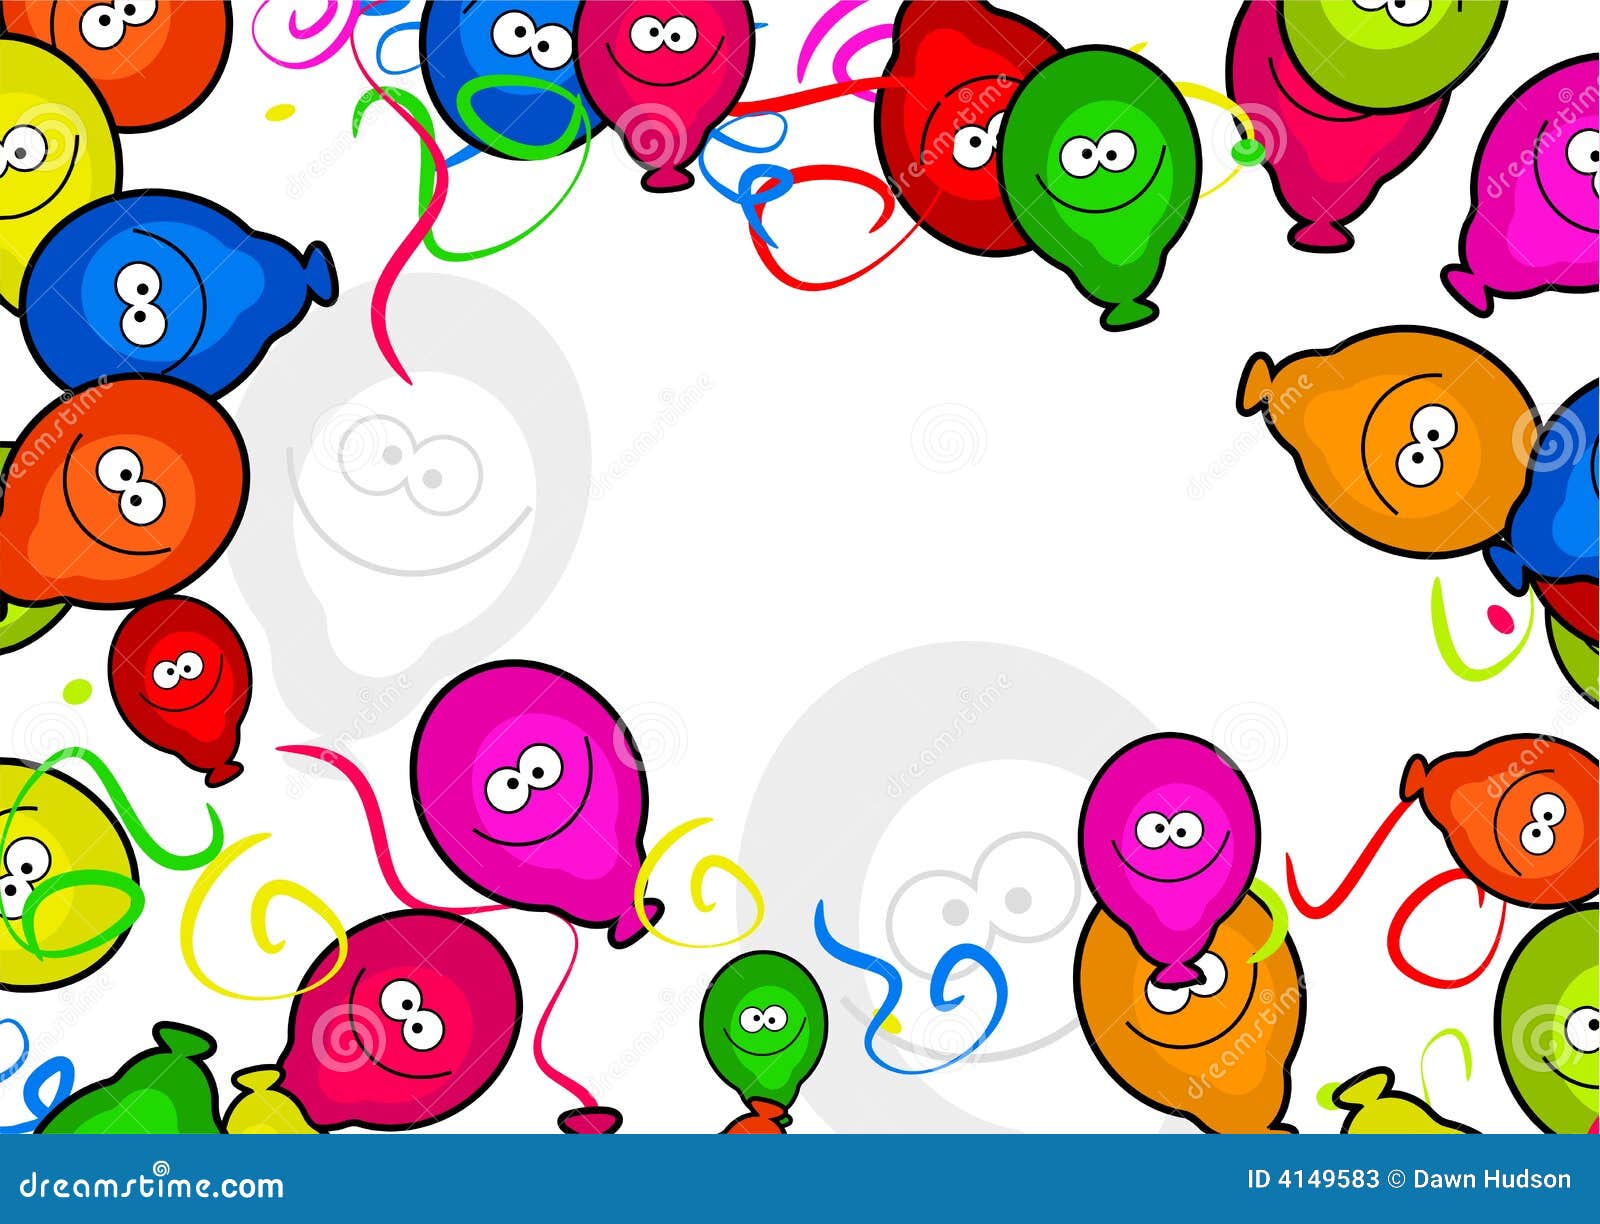 balloon decoration clipart - photo #34